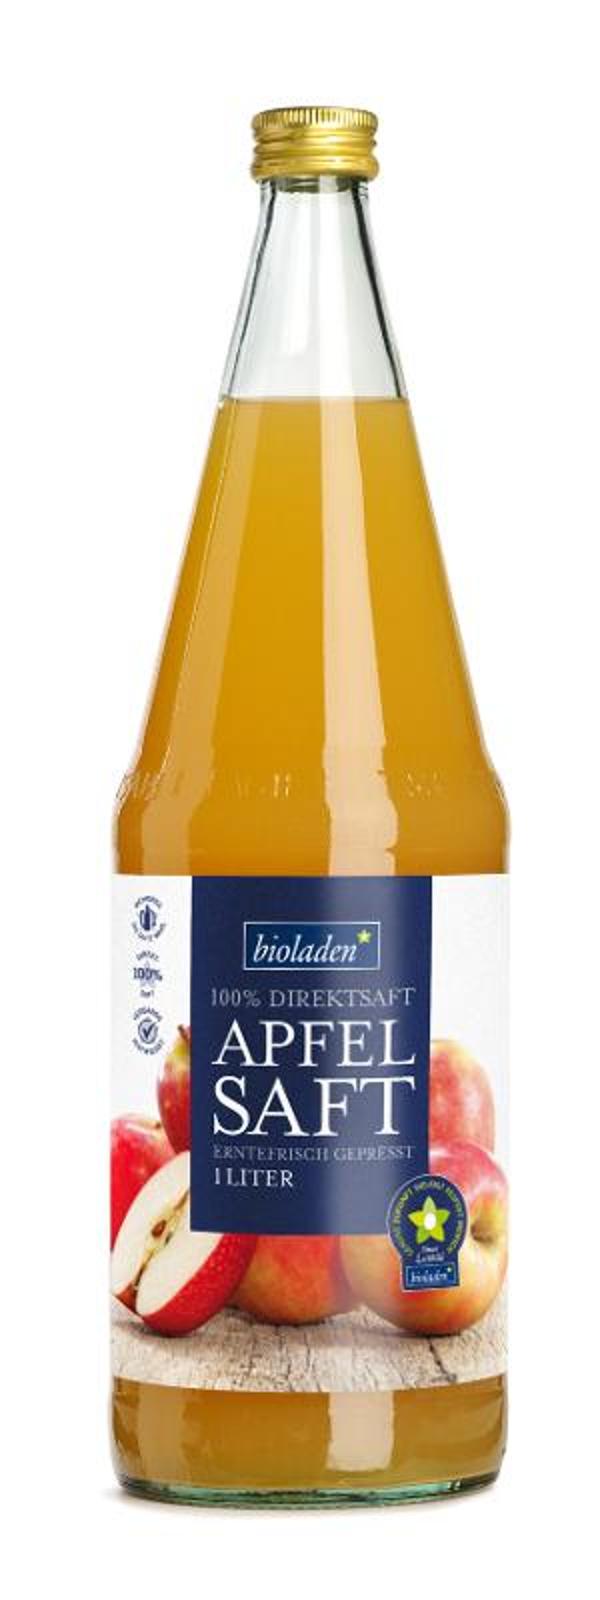 Produktfoto zu Apfelsaft bioladen, 6x1l